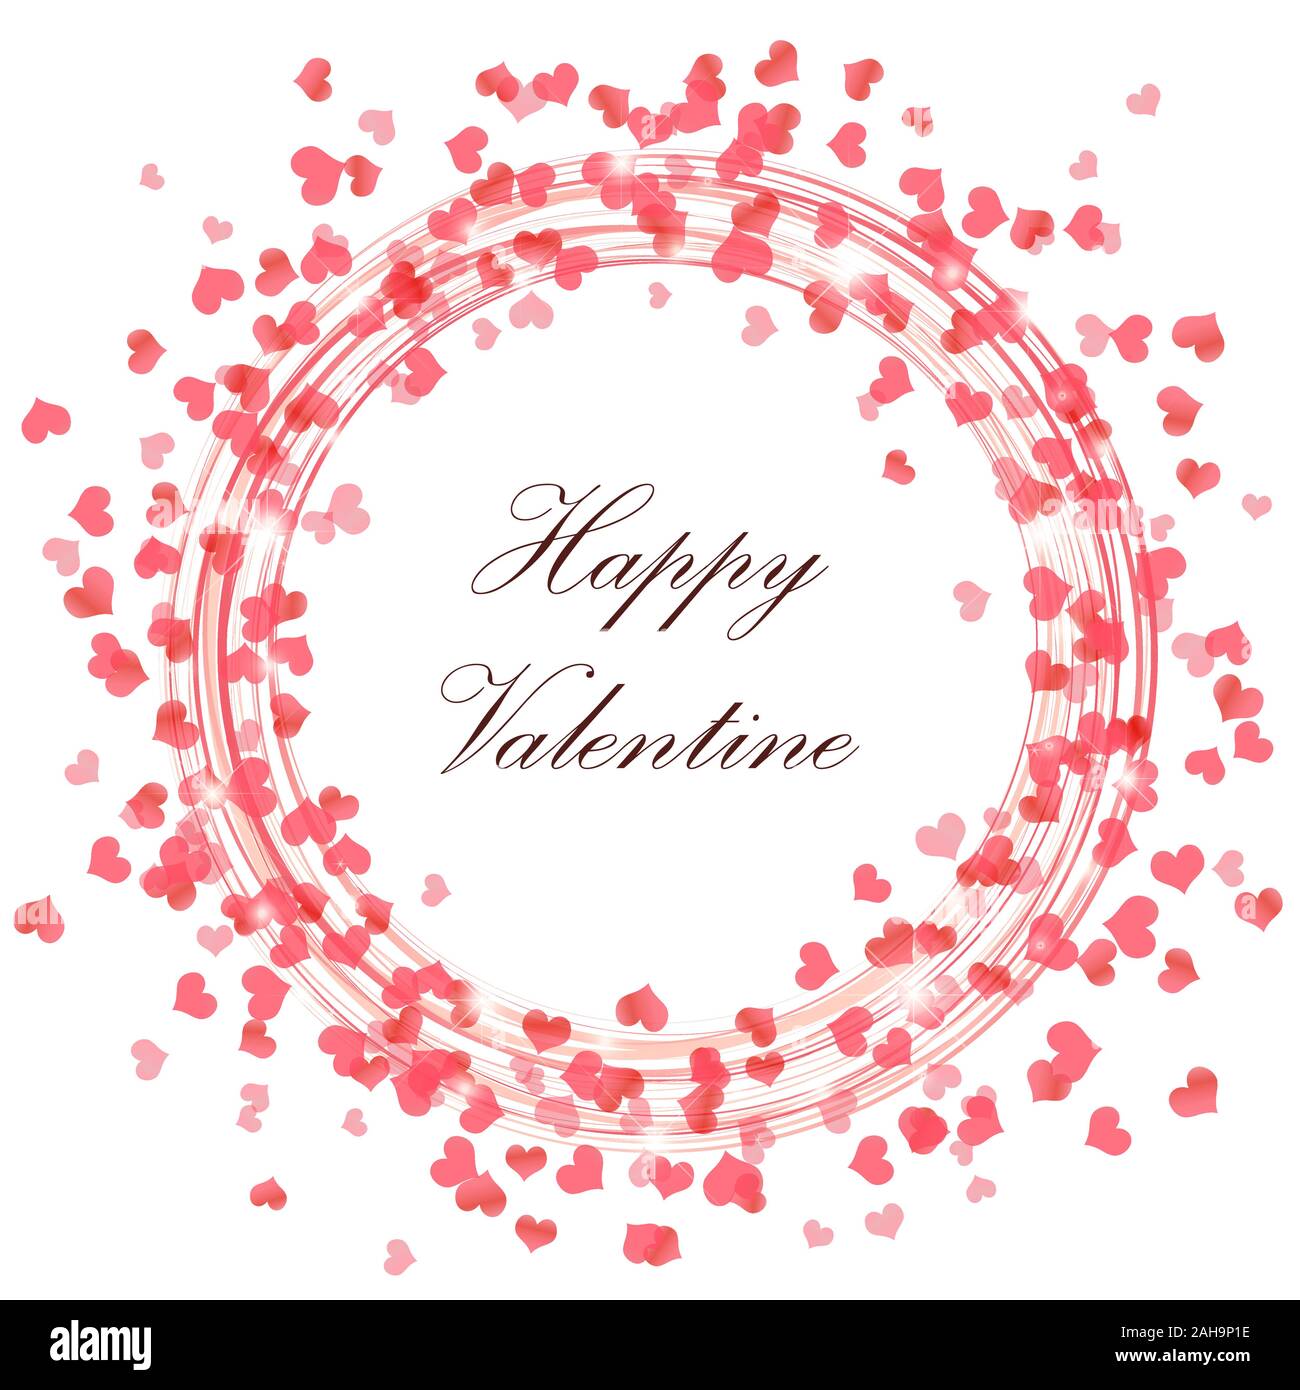 Runde Blitz mit Herzen und funkeln Effekte Rot auf weißem Hintergrund mit Happy Valentine Grüße Stock Vektor